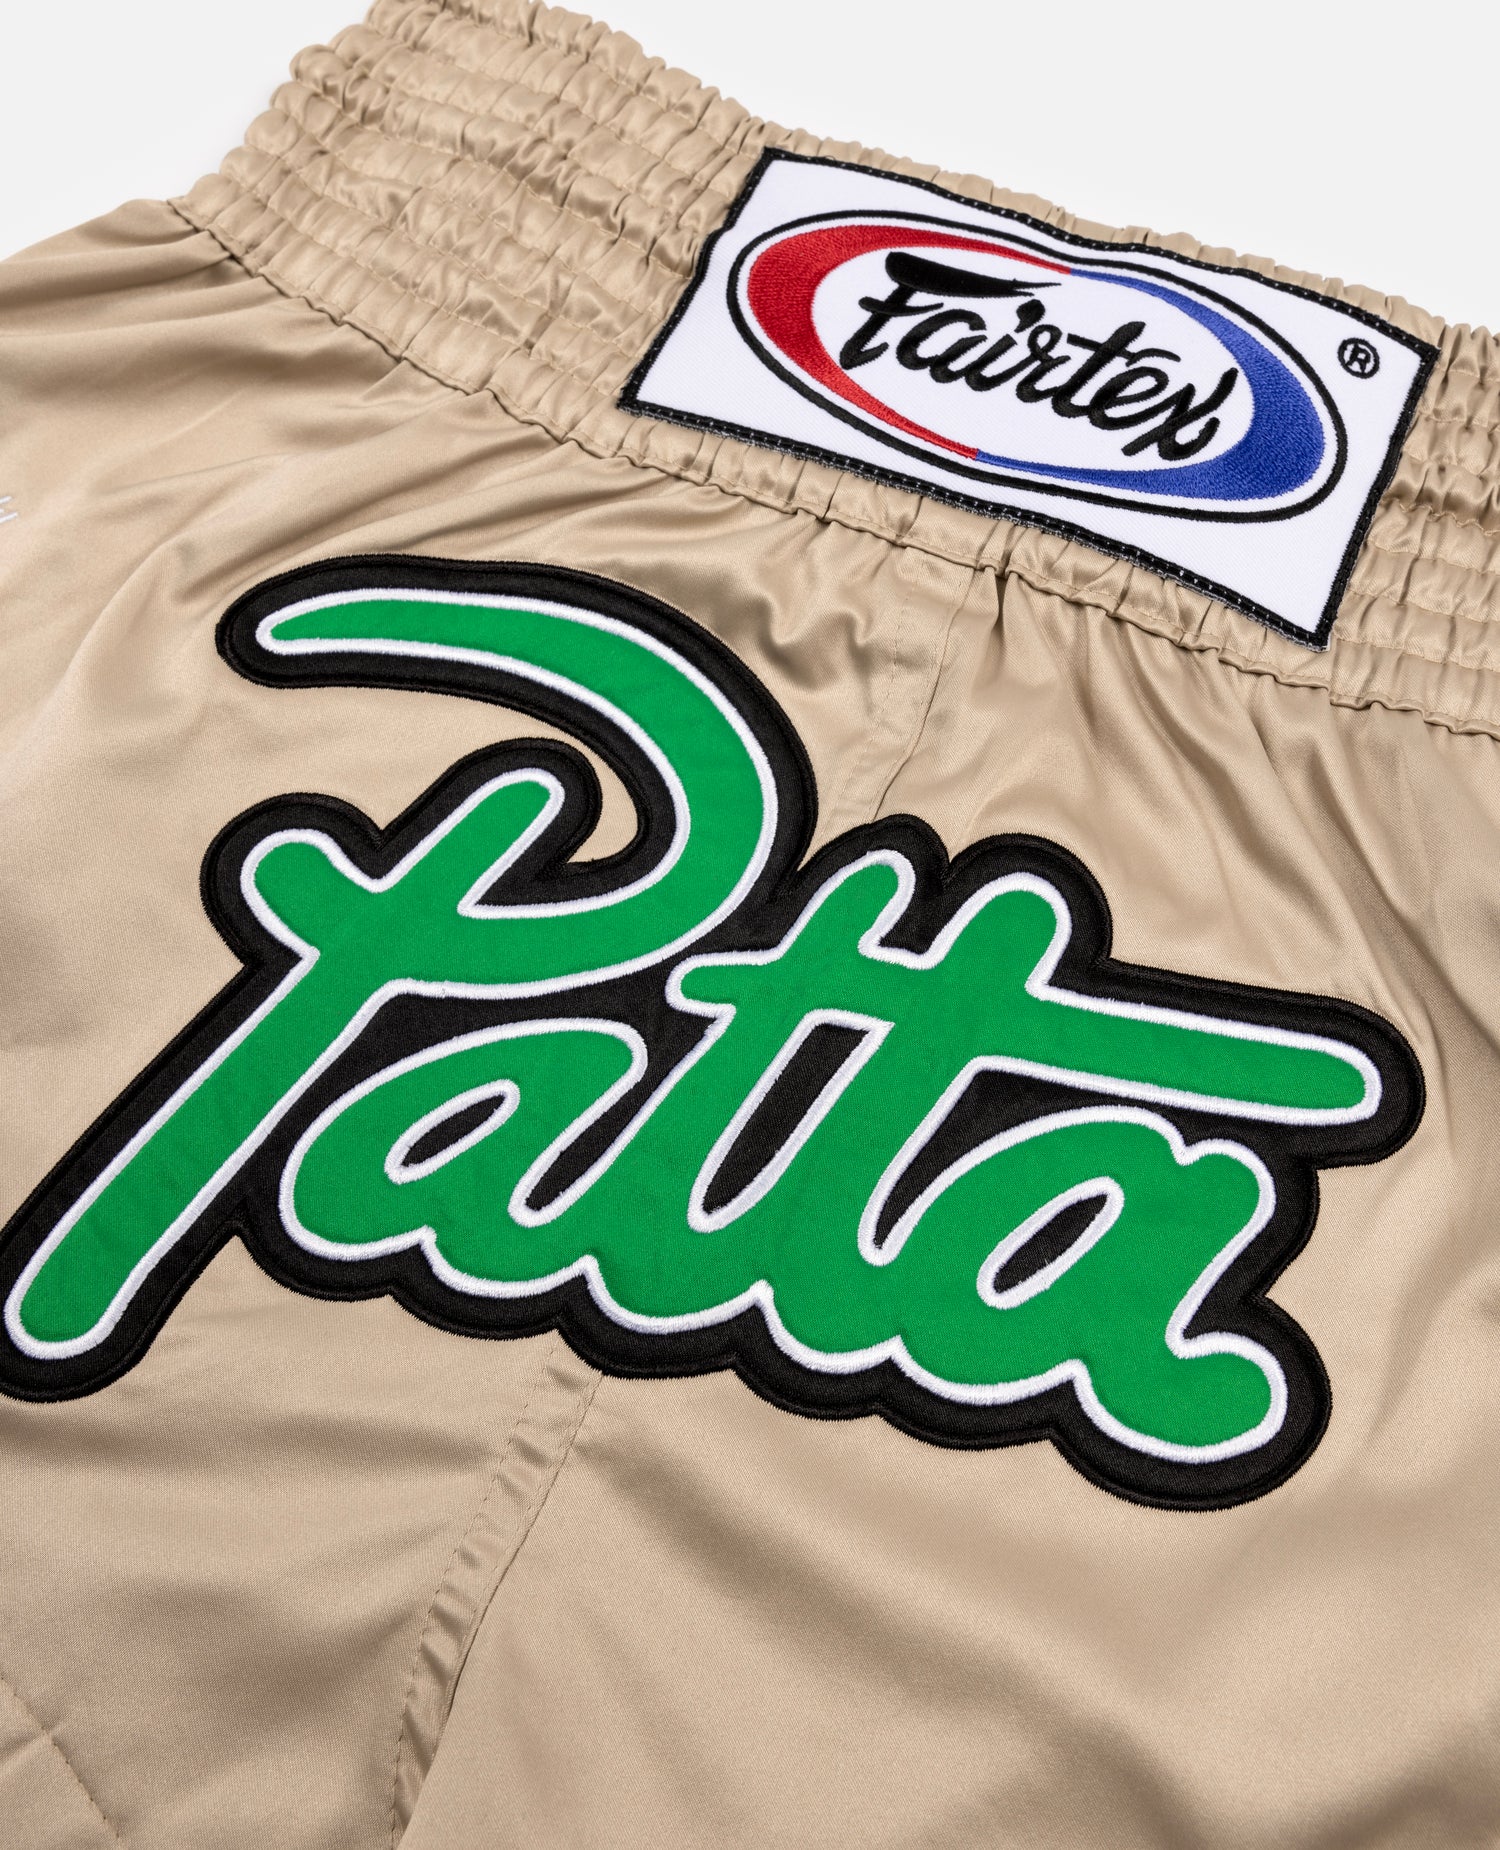 Patta x Fairtex Muay Thai Shorts (Gold/Jolly Green)